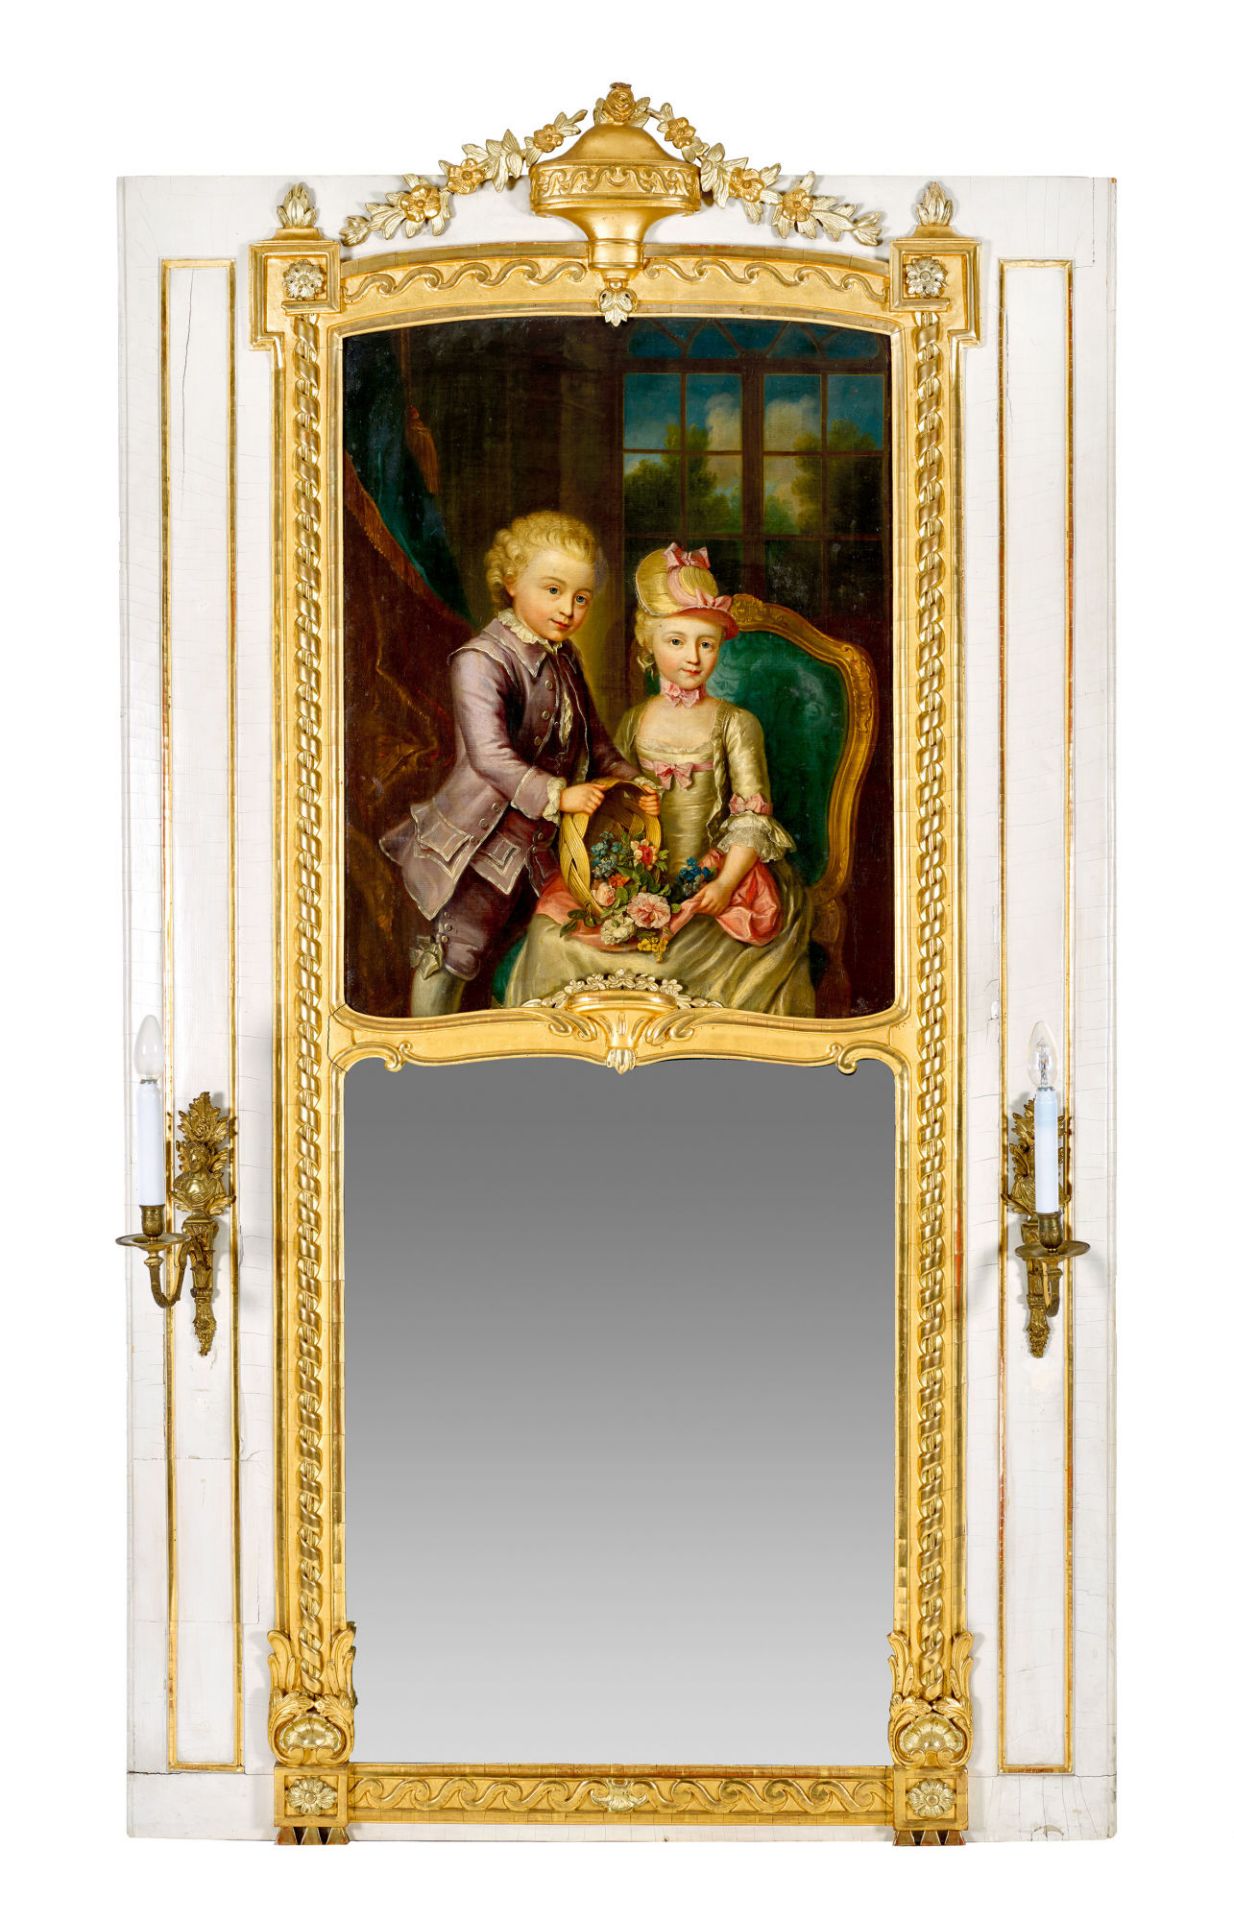 ABERLI, JOHANN LUDWIG: Trumeauspiegel mit Bildnis eines vornehmen Kinderpaares.